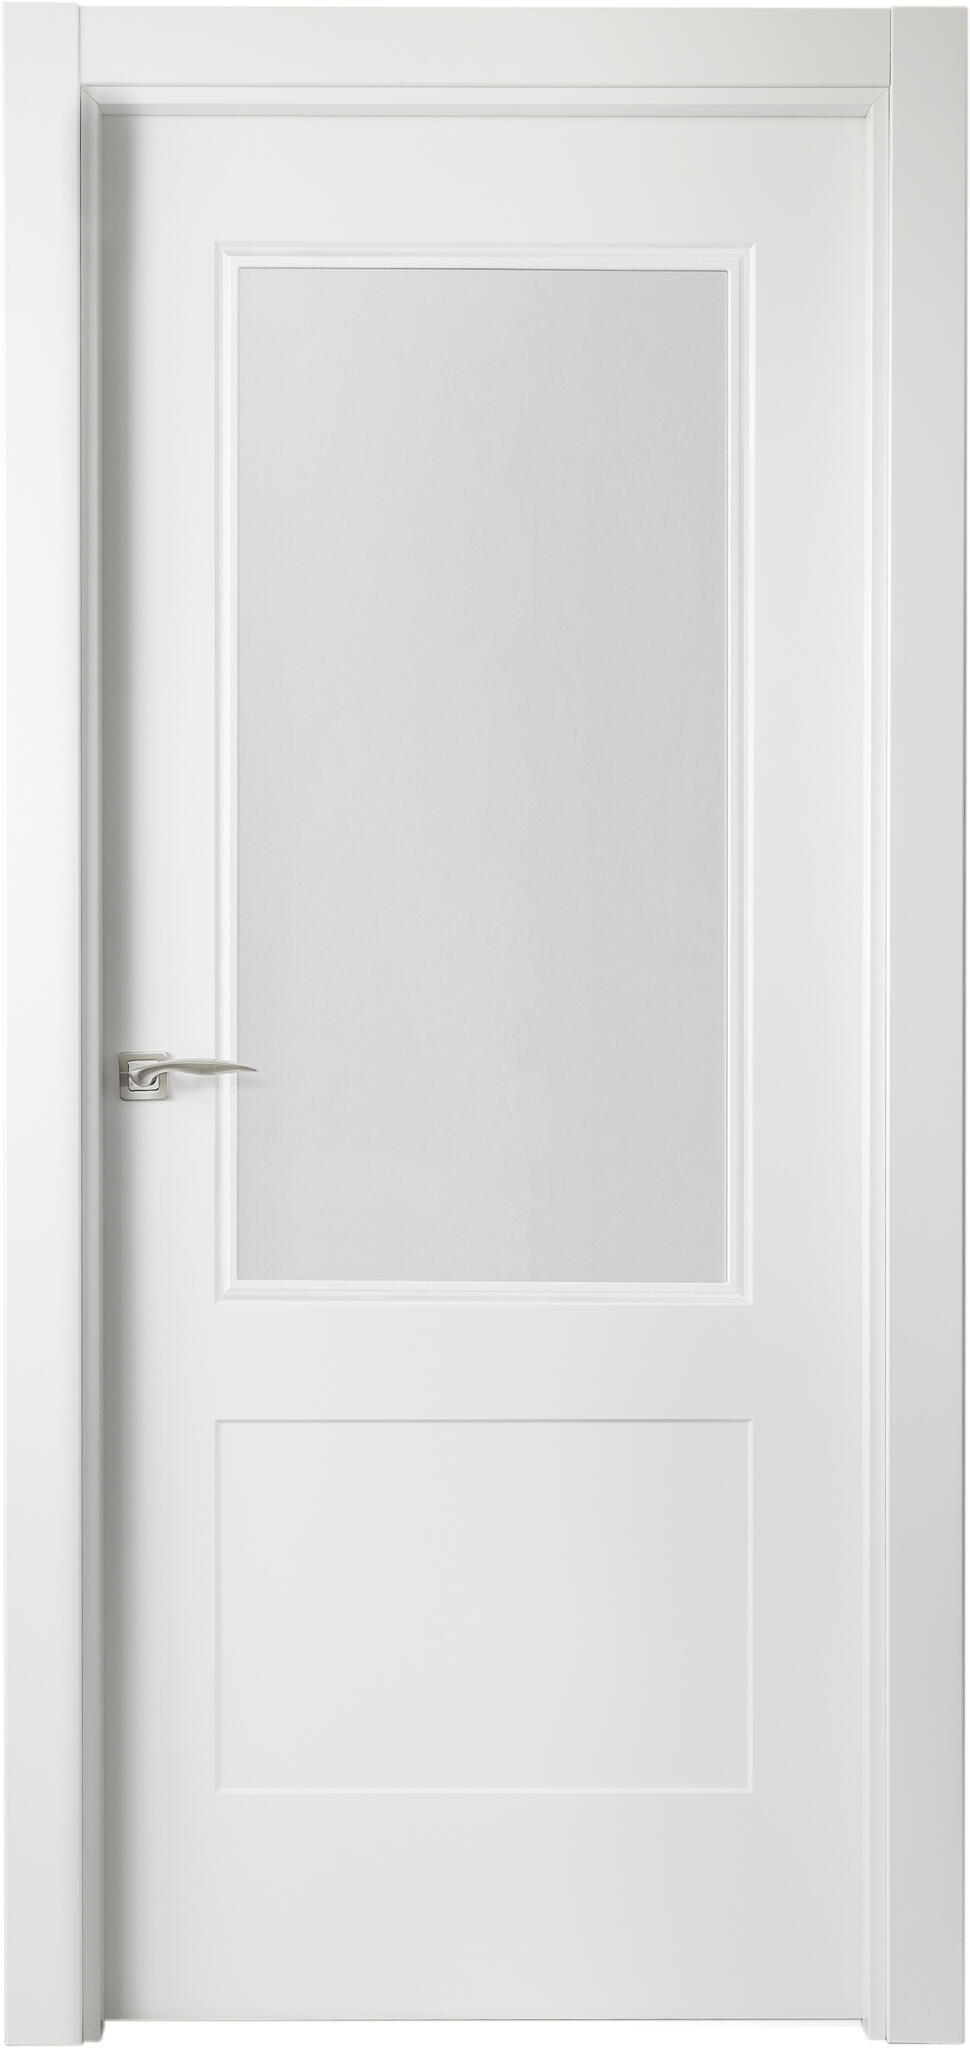 Puerta atlanta plus blanco apertura derecha con cristal de 9x92,5cm